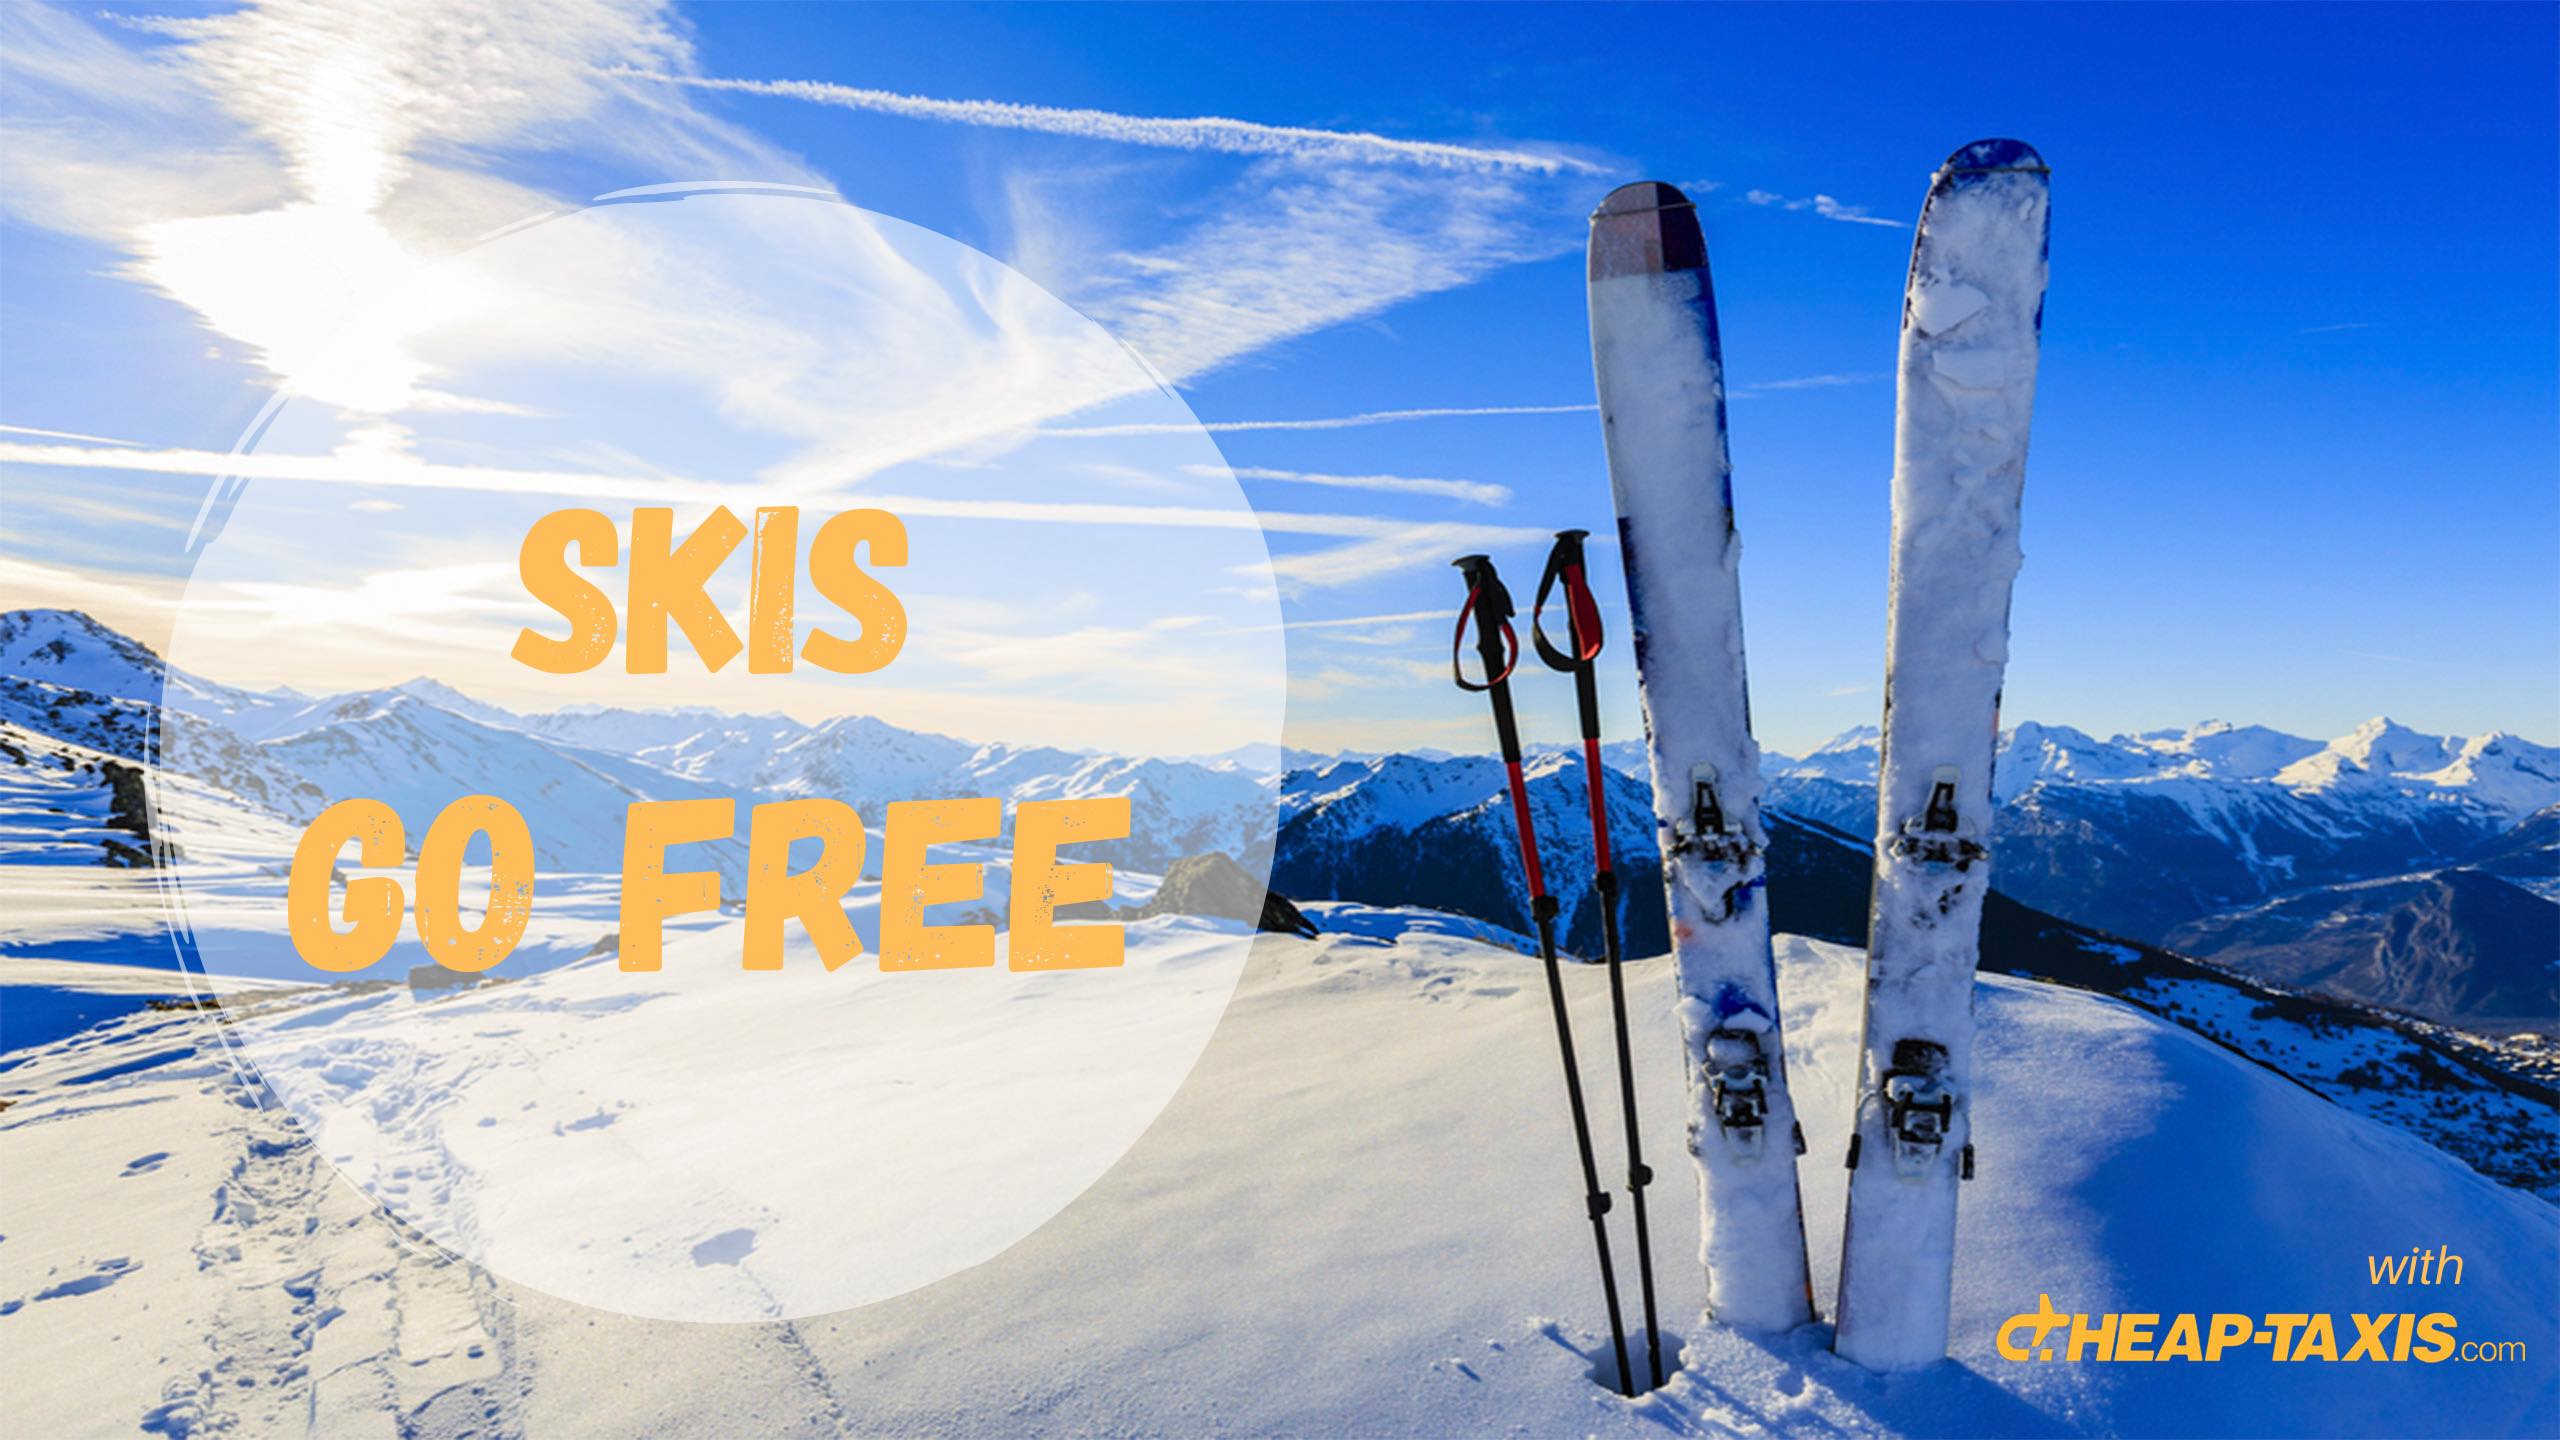 Skis go free